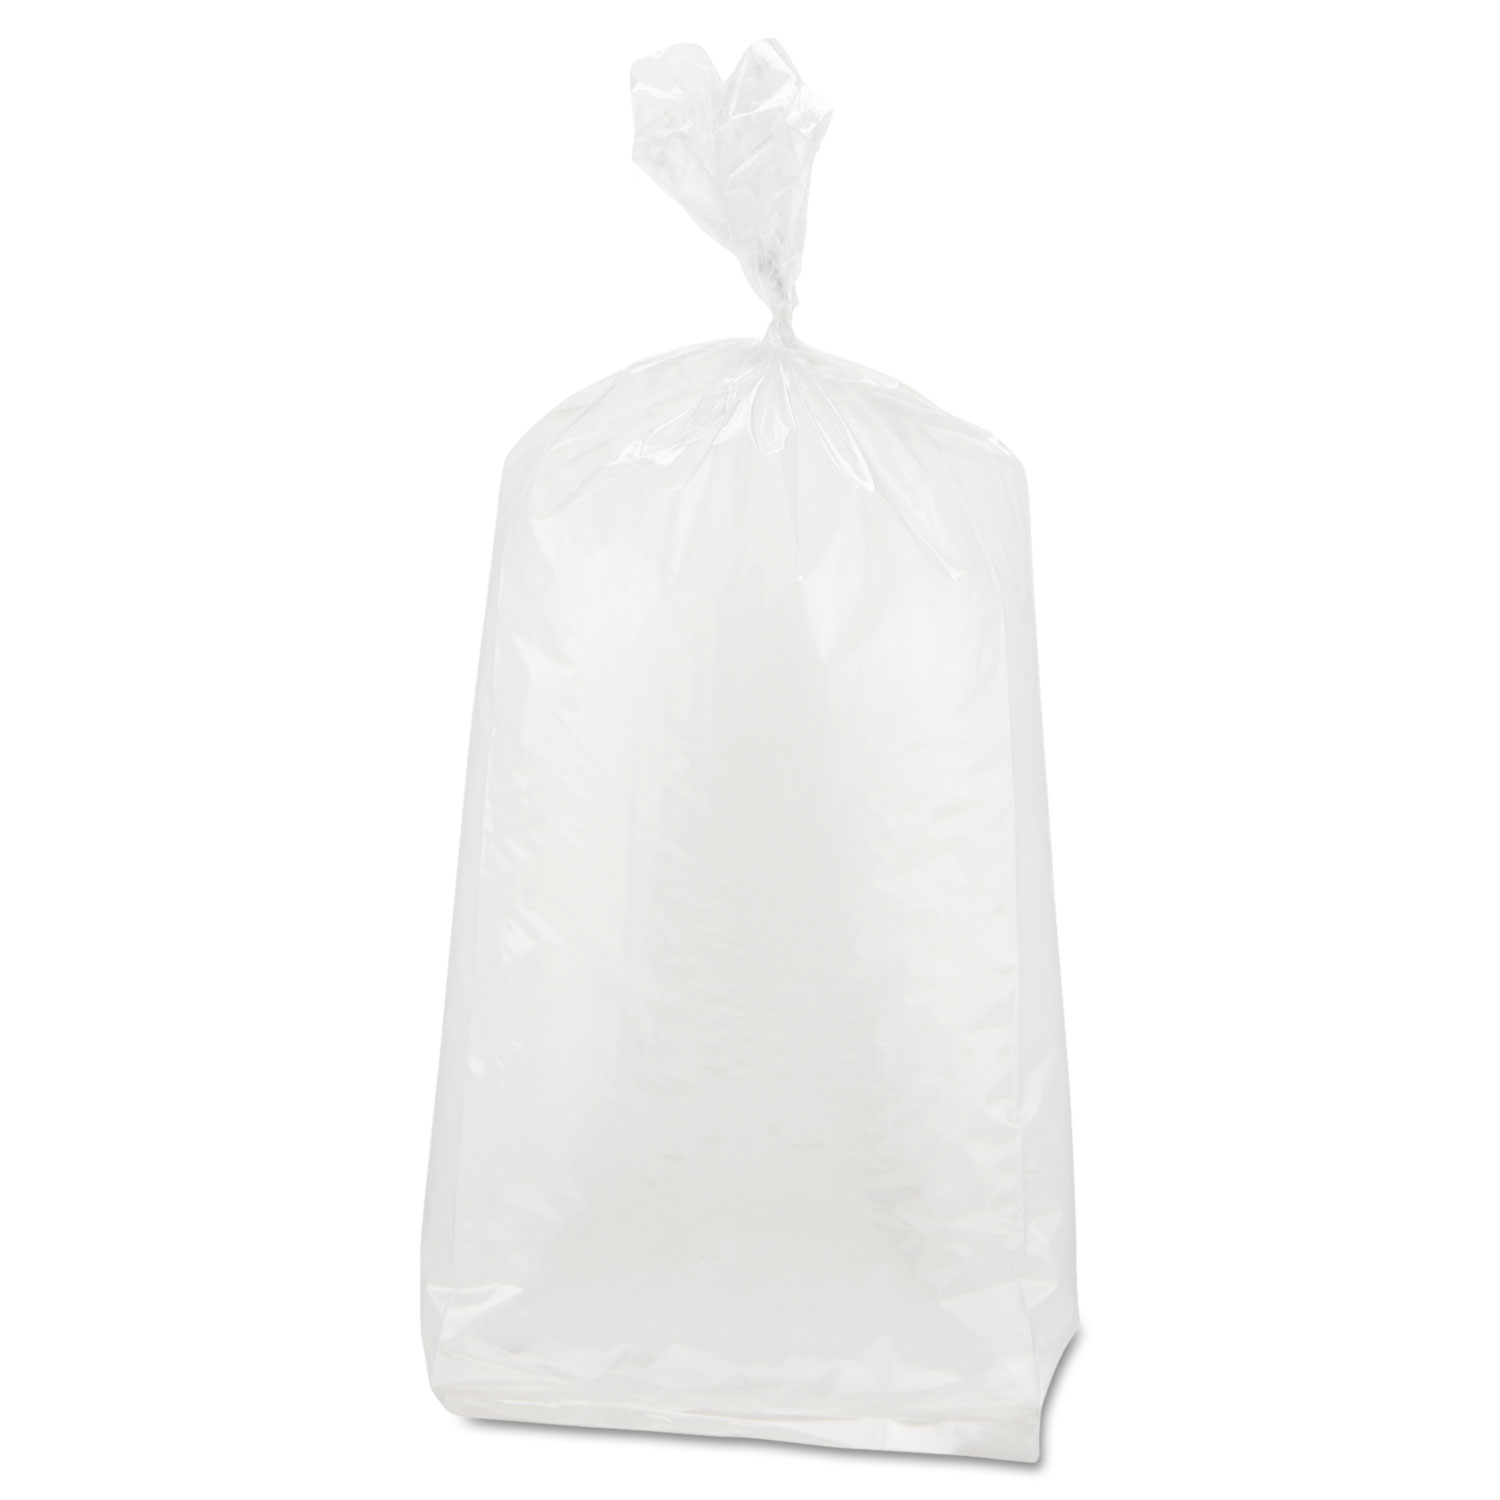 Inteplast Food Bags, 22 qt, 1 mil, 10 x 24, Clear, 500/Carton